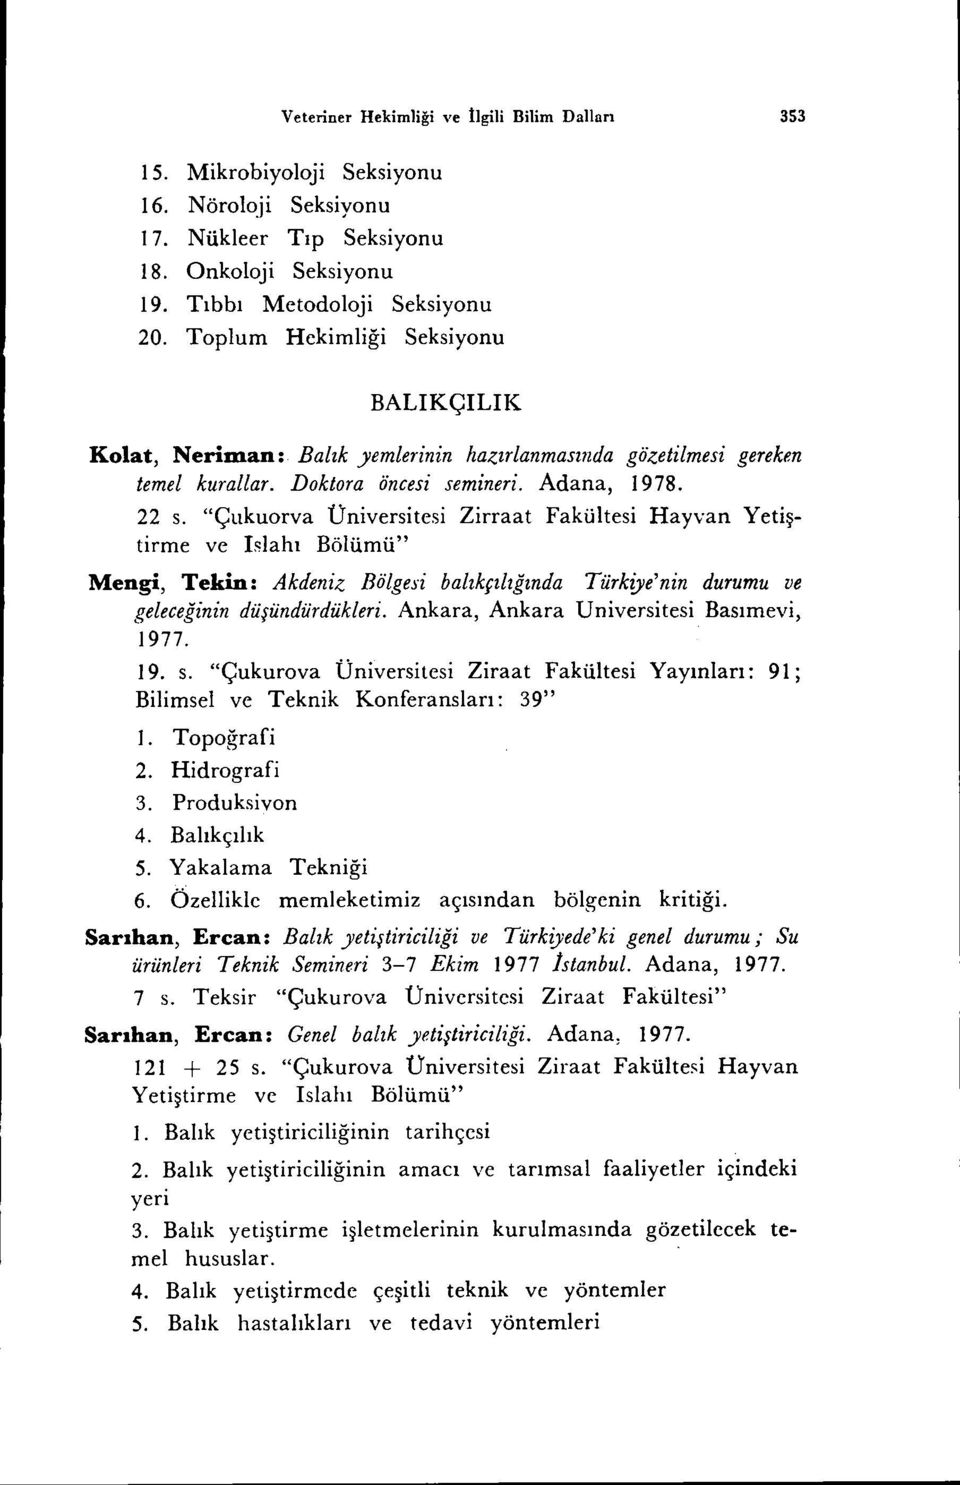 "Çııkuorva Üniversitesi Zirraat Fakültesi Hayvan Yetiştirme ve I~lahı Bölümü" Mengi, Tekin: Akdeniz Bölgesi balıkçılığında Türkiye'nin durumu ve geleceğinin düşündürdükleri.